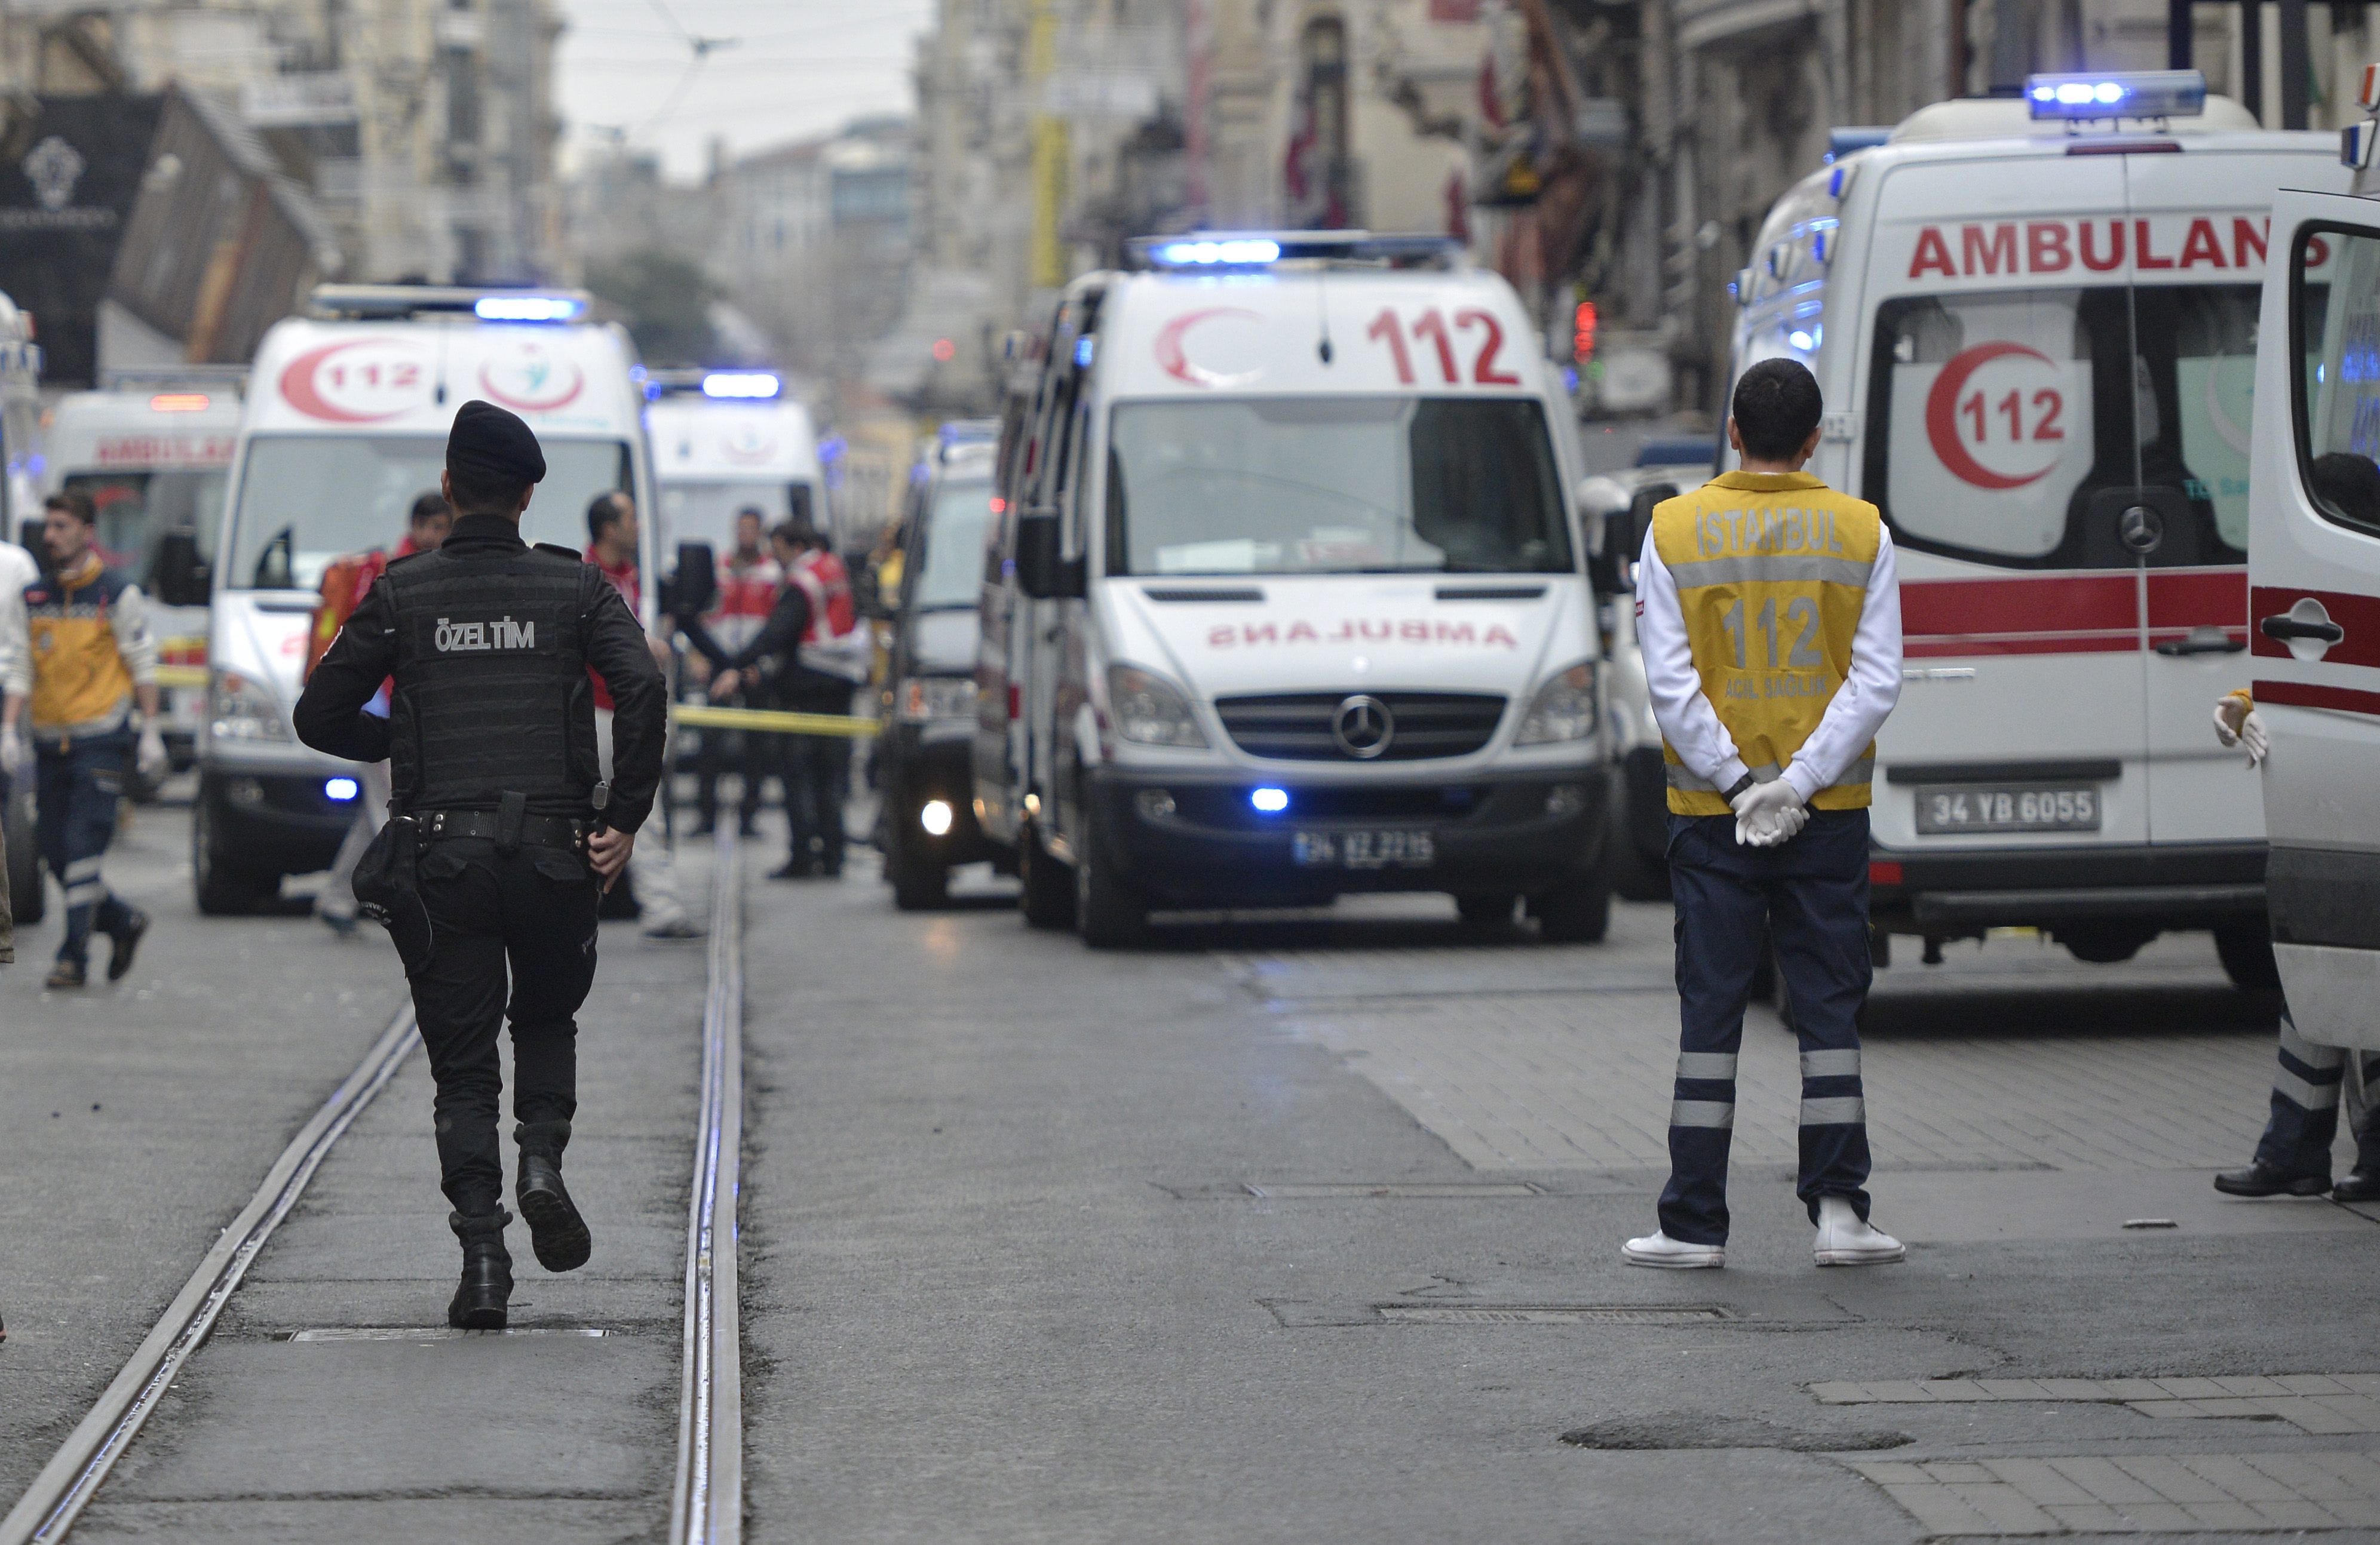 Взрив разтърси днес главната пешеходна търговска улица в европейската част на Истанбул. АФП, позовавайки се на турски информационни канали, съобщава, че става дума за самоубийствен терористичен акт. Четирима души са жертвите (единият от тях е камикадзето), а 36 бяха ранени, седем от които тежко, съобщи турският министър на здравеопазването Мехмет Мюеззиноглу. Той посочи, че 12 от ранените са чужденци